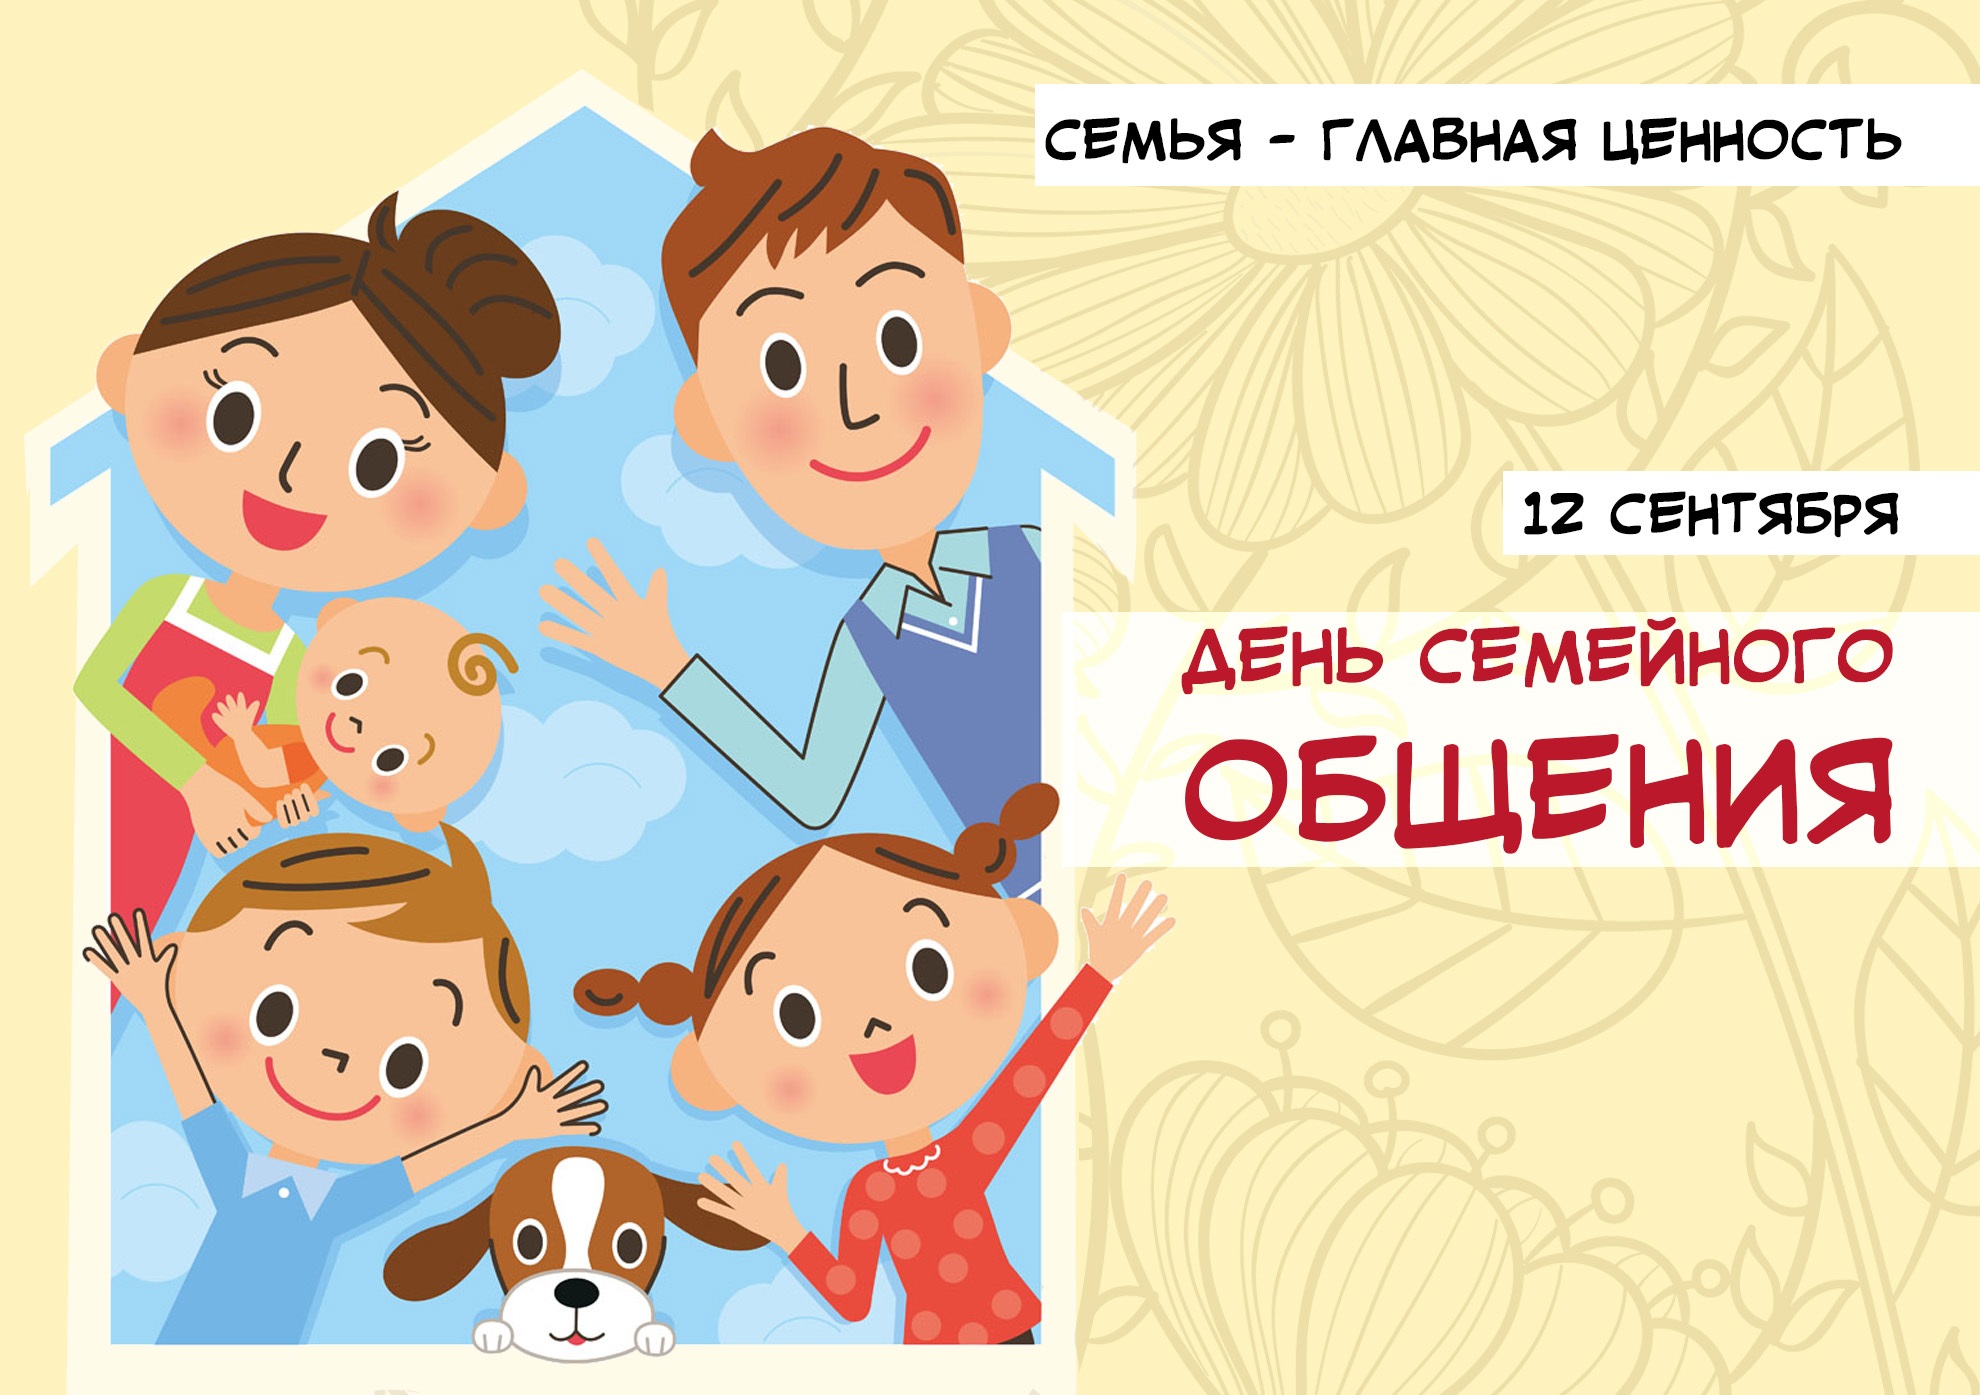 12 сентября в Ульяновской области отмечается День семейного общения.